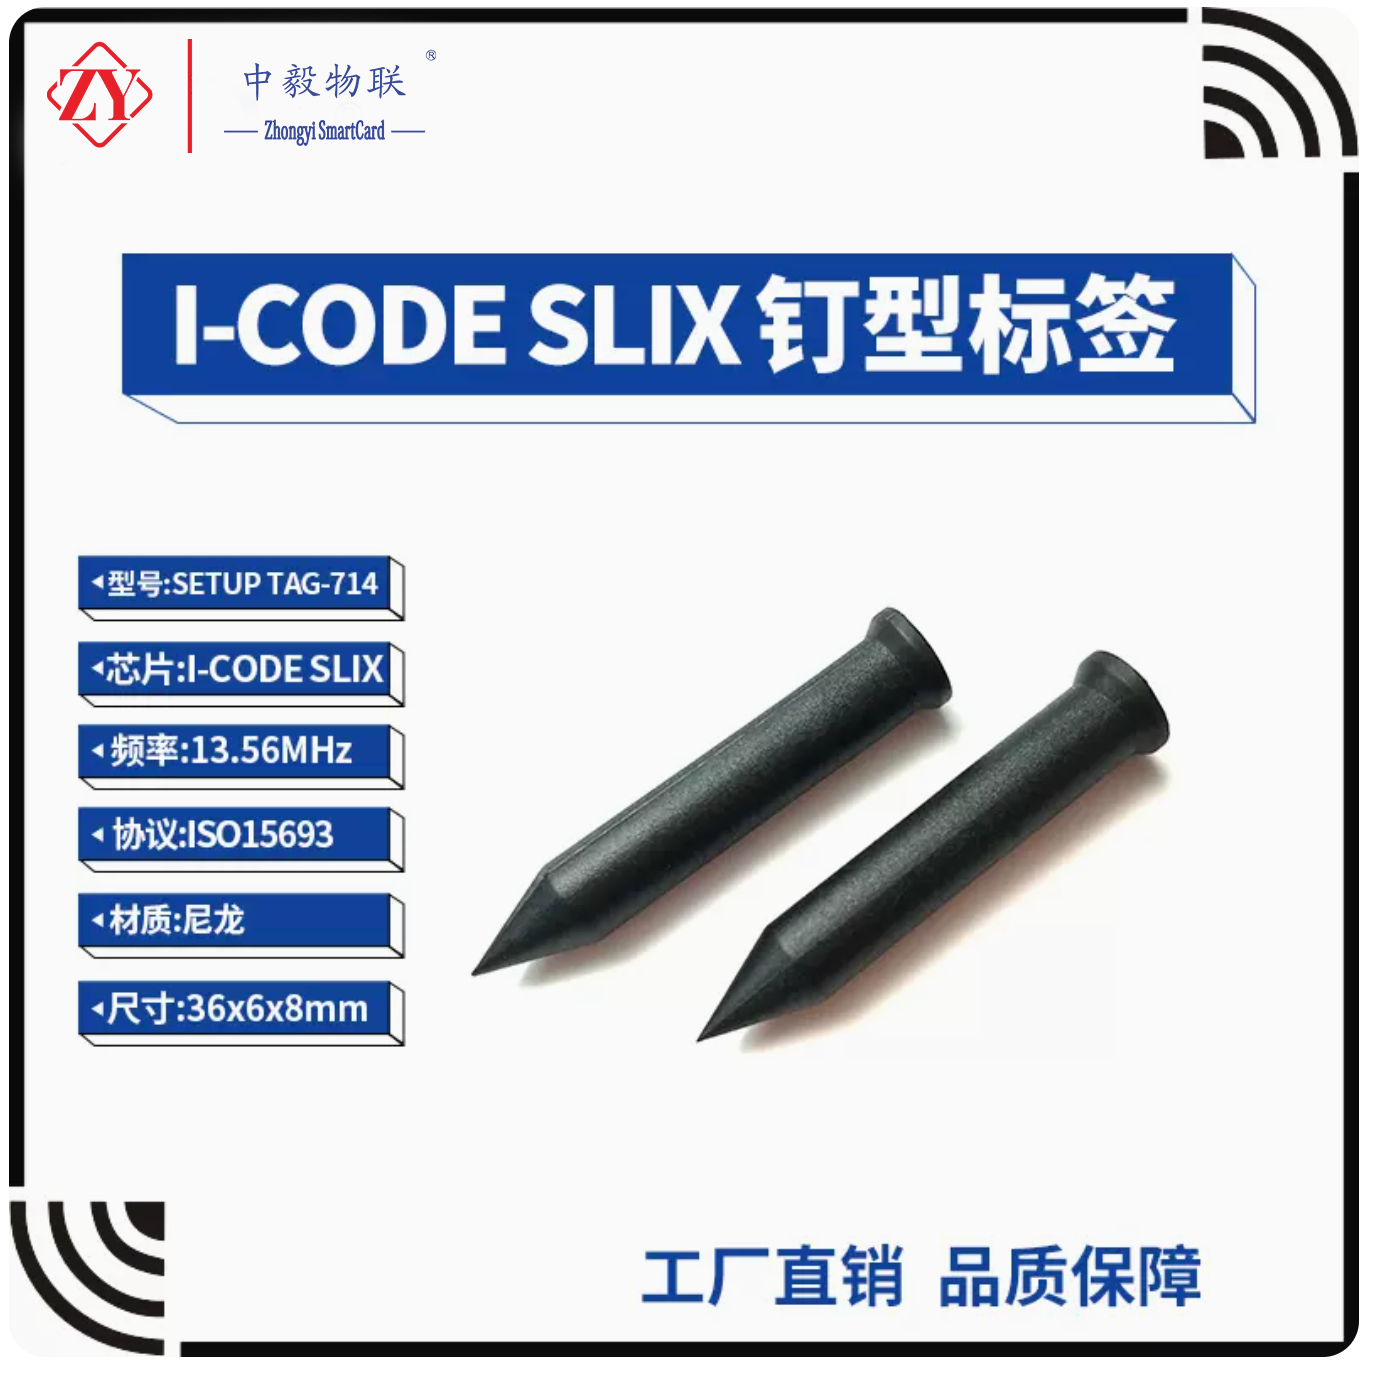 I-CODE SLIX钉子标签I-CODE SLI芯片ISO15693协议RFID 钉型电子标签 36mm 超高频 ABS电子标签 水泥标签 建筑识别管理 图片